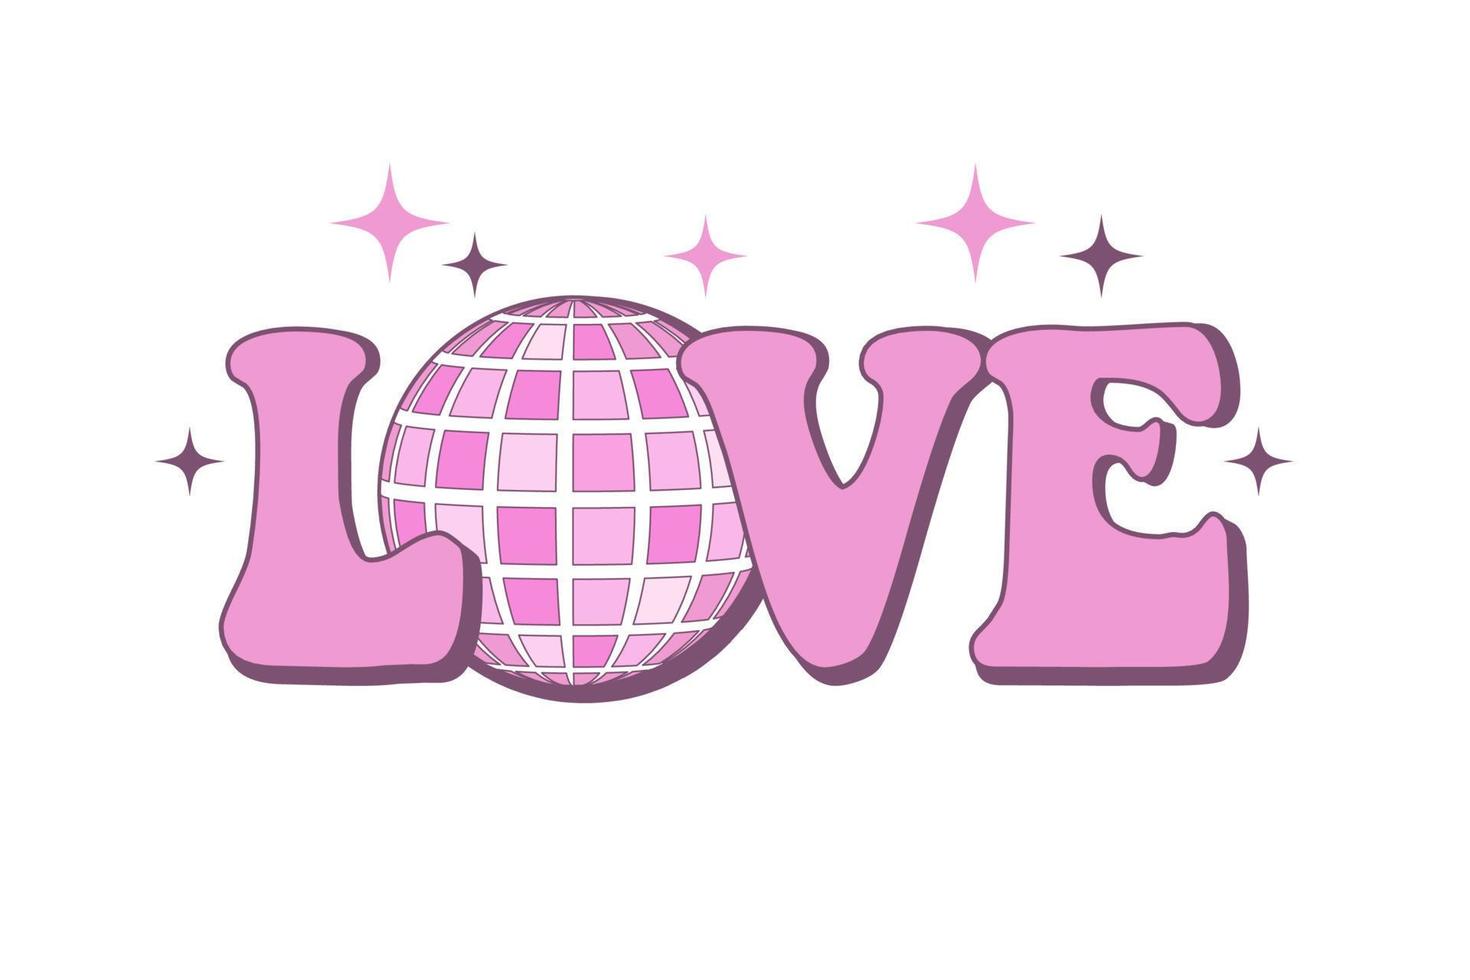 adesivo de slogan de amor groovy dos anos 70. impressão retrô com texto rosa fofo e bola de discoteca para camiseta gráfica, camiseta ou adesivo vetor